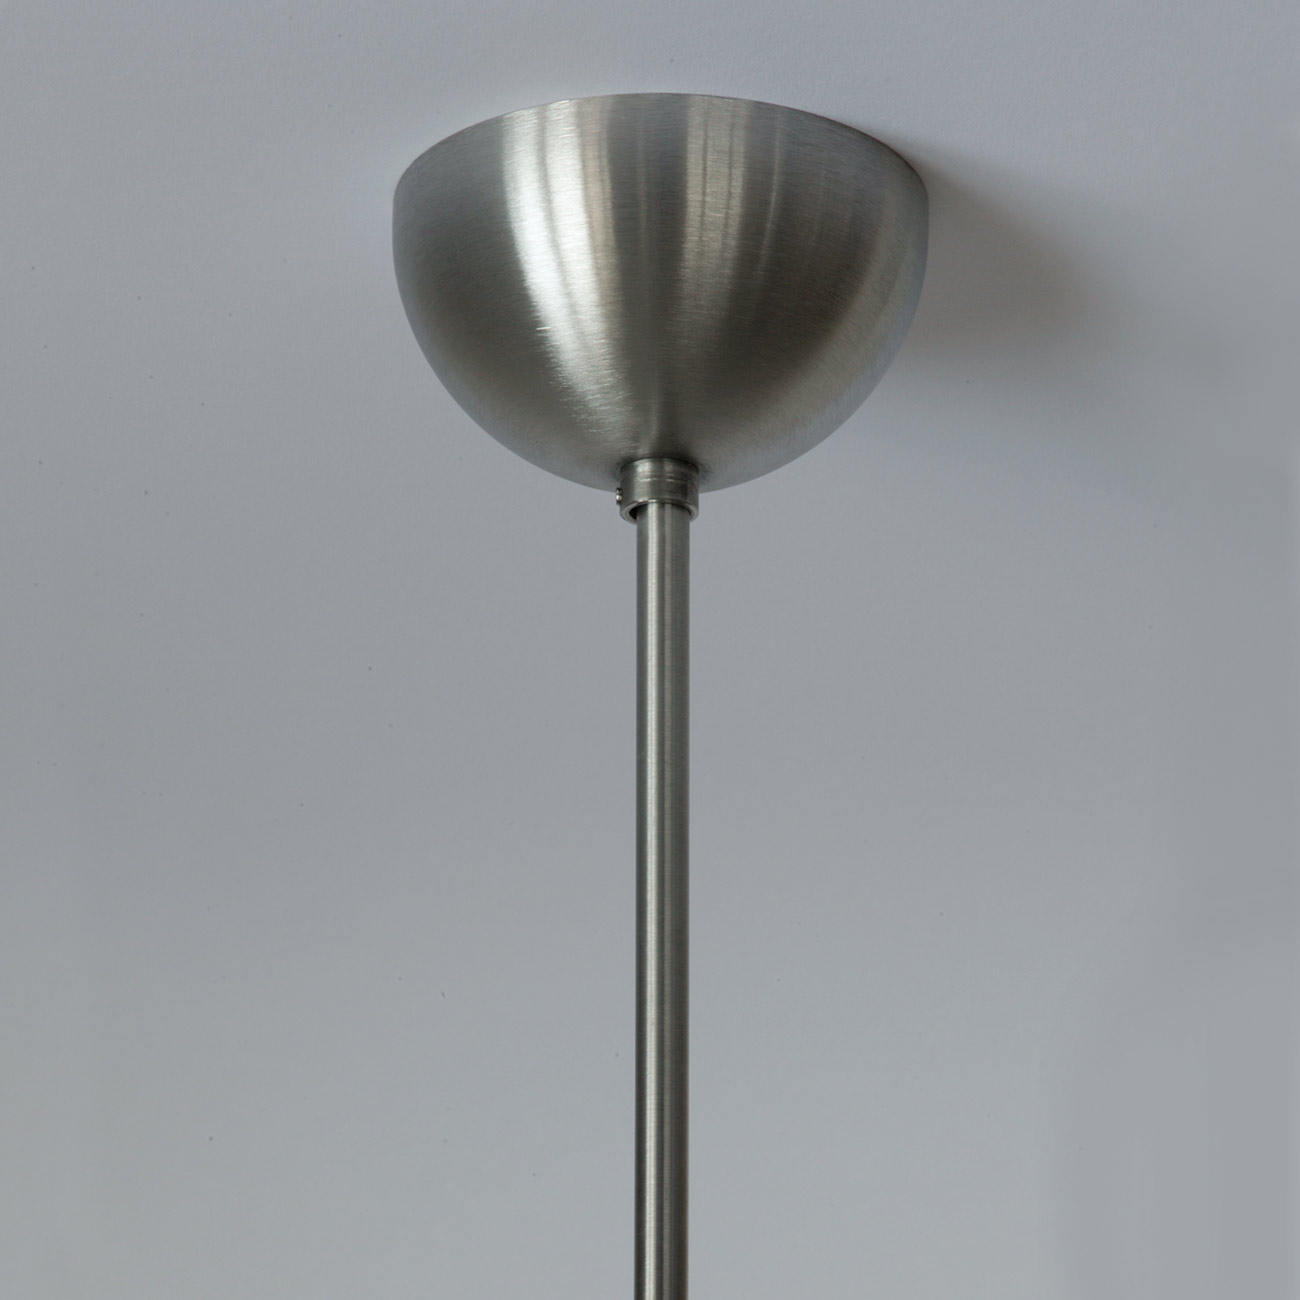 Klassische Kugel-Hängeleuchte ADRIANA mit Opalglas Ø 20 cm: Baldachin mit Pendelrohr, Edelstahl satiniert